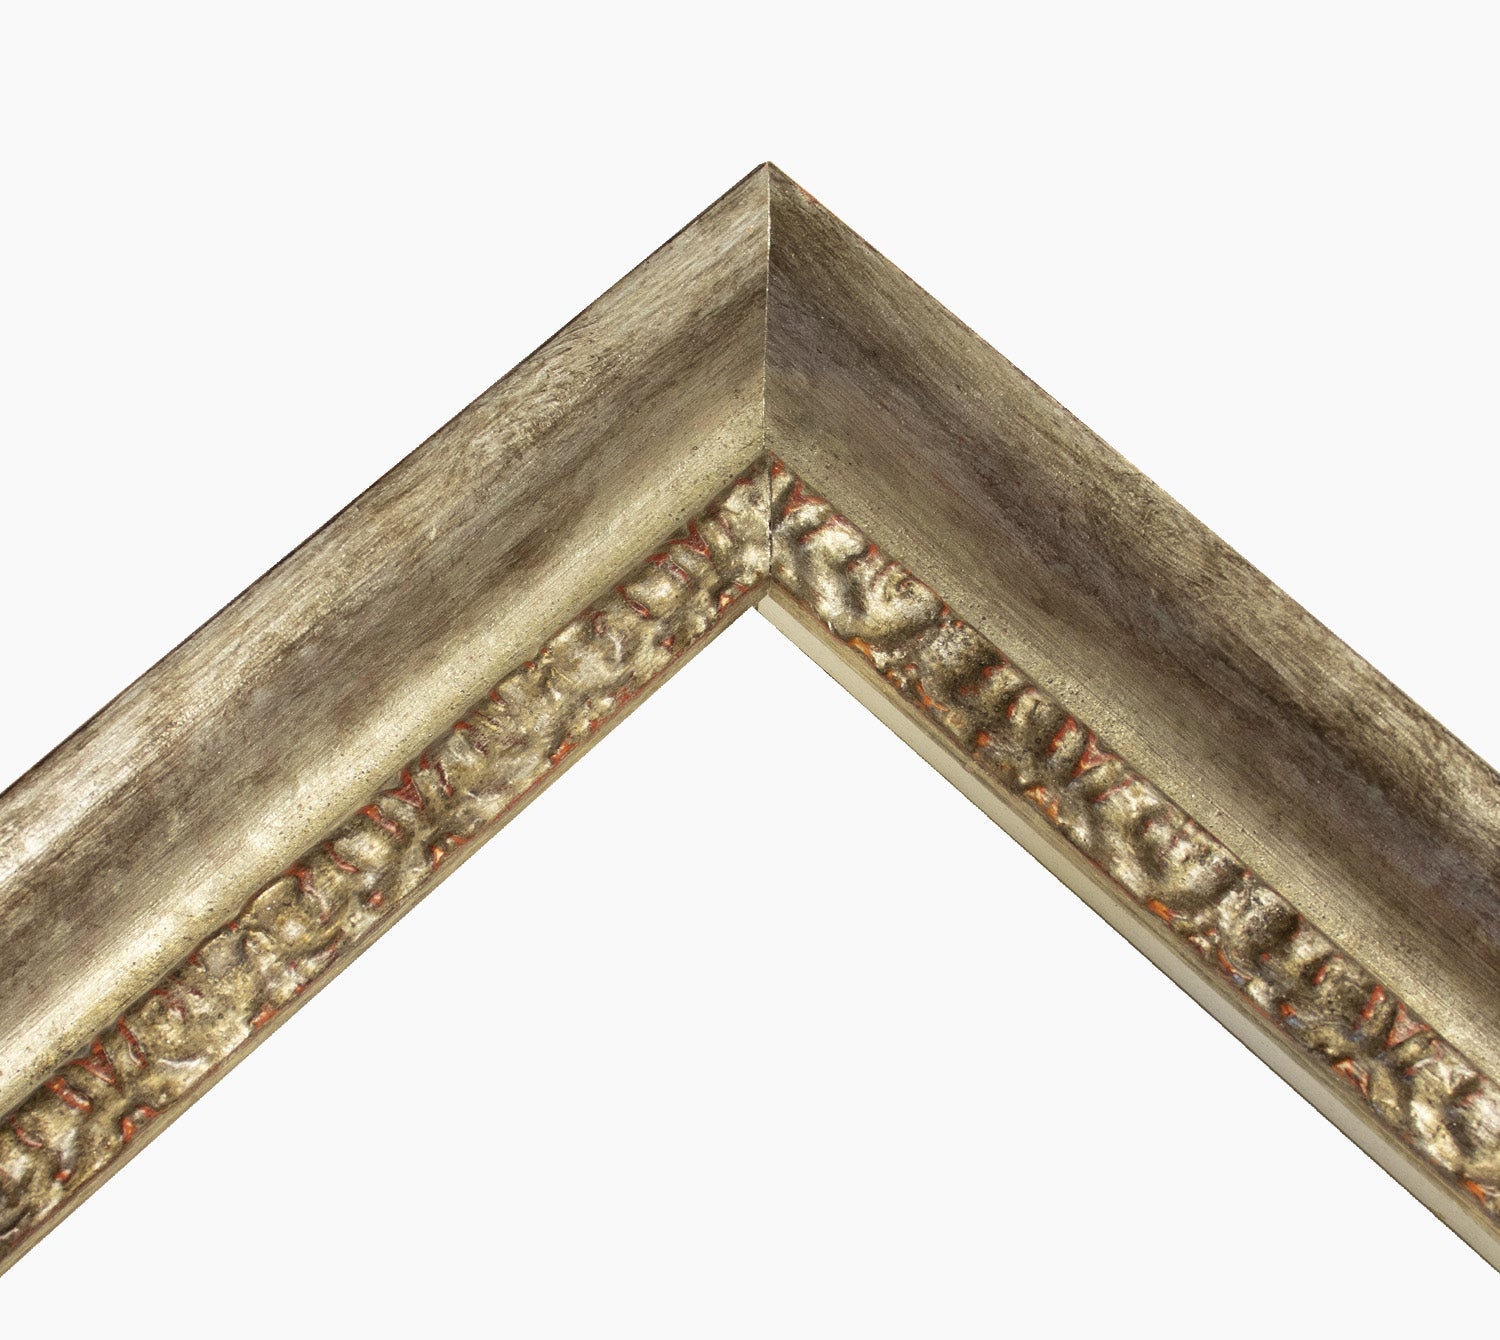 230.231 cadre en bois à la feuille d'argent antique mesure de profil 45x45 mm Lombarda cornici S.n.c.